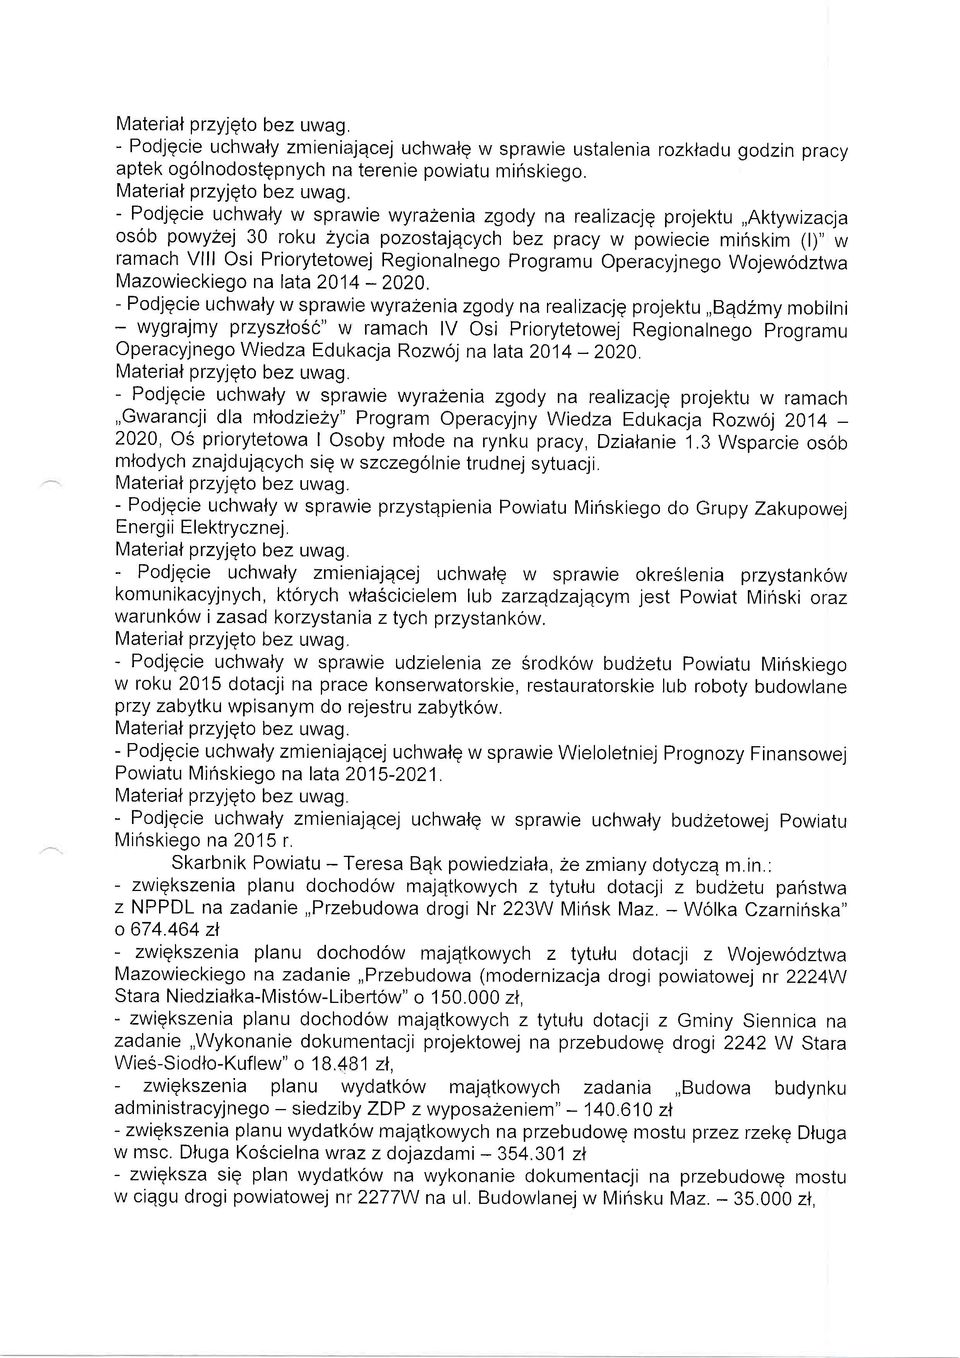 Regionalnego Programu Operacyjnego Wojewodztwa Mazowieckiego na lata 201'4-2020.